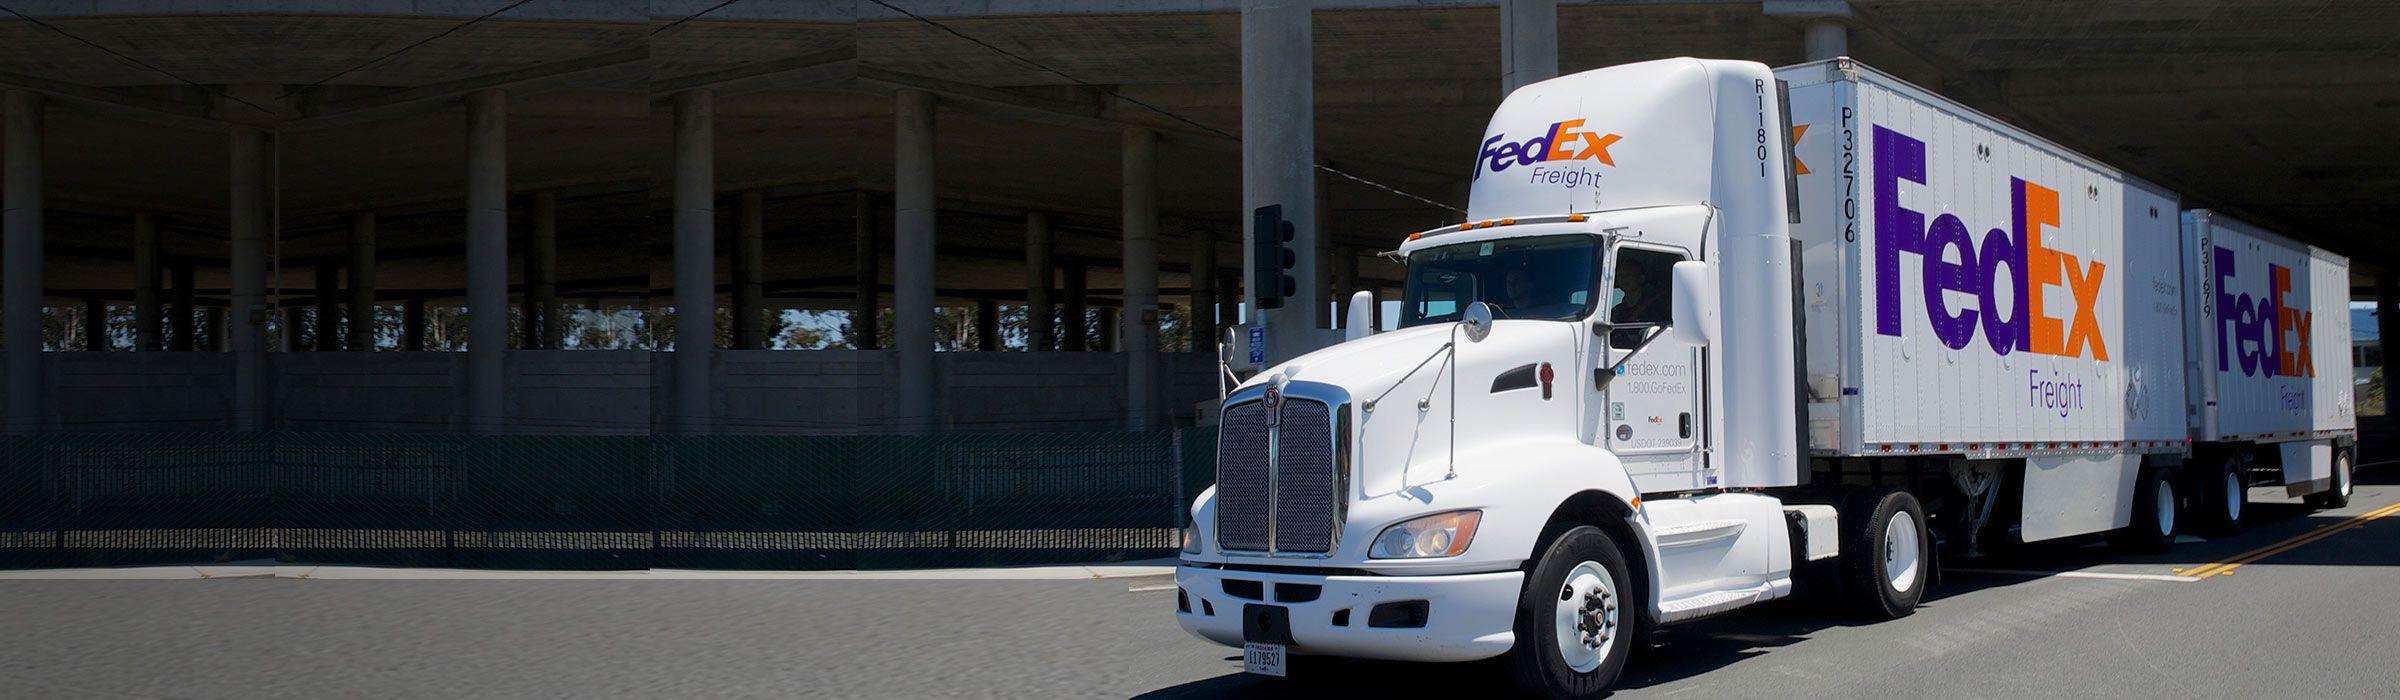 FedEx Freight Truck Logo - FedEx Freight (LTL) Shipping Forms | FedEx Canada